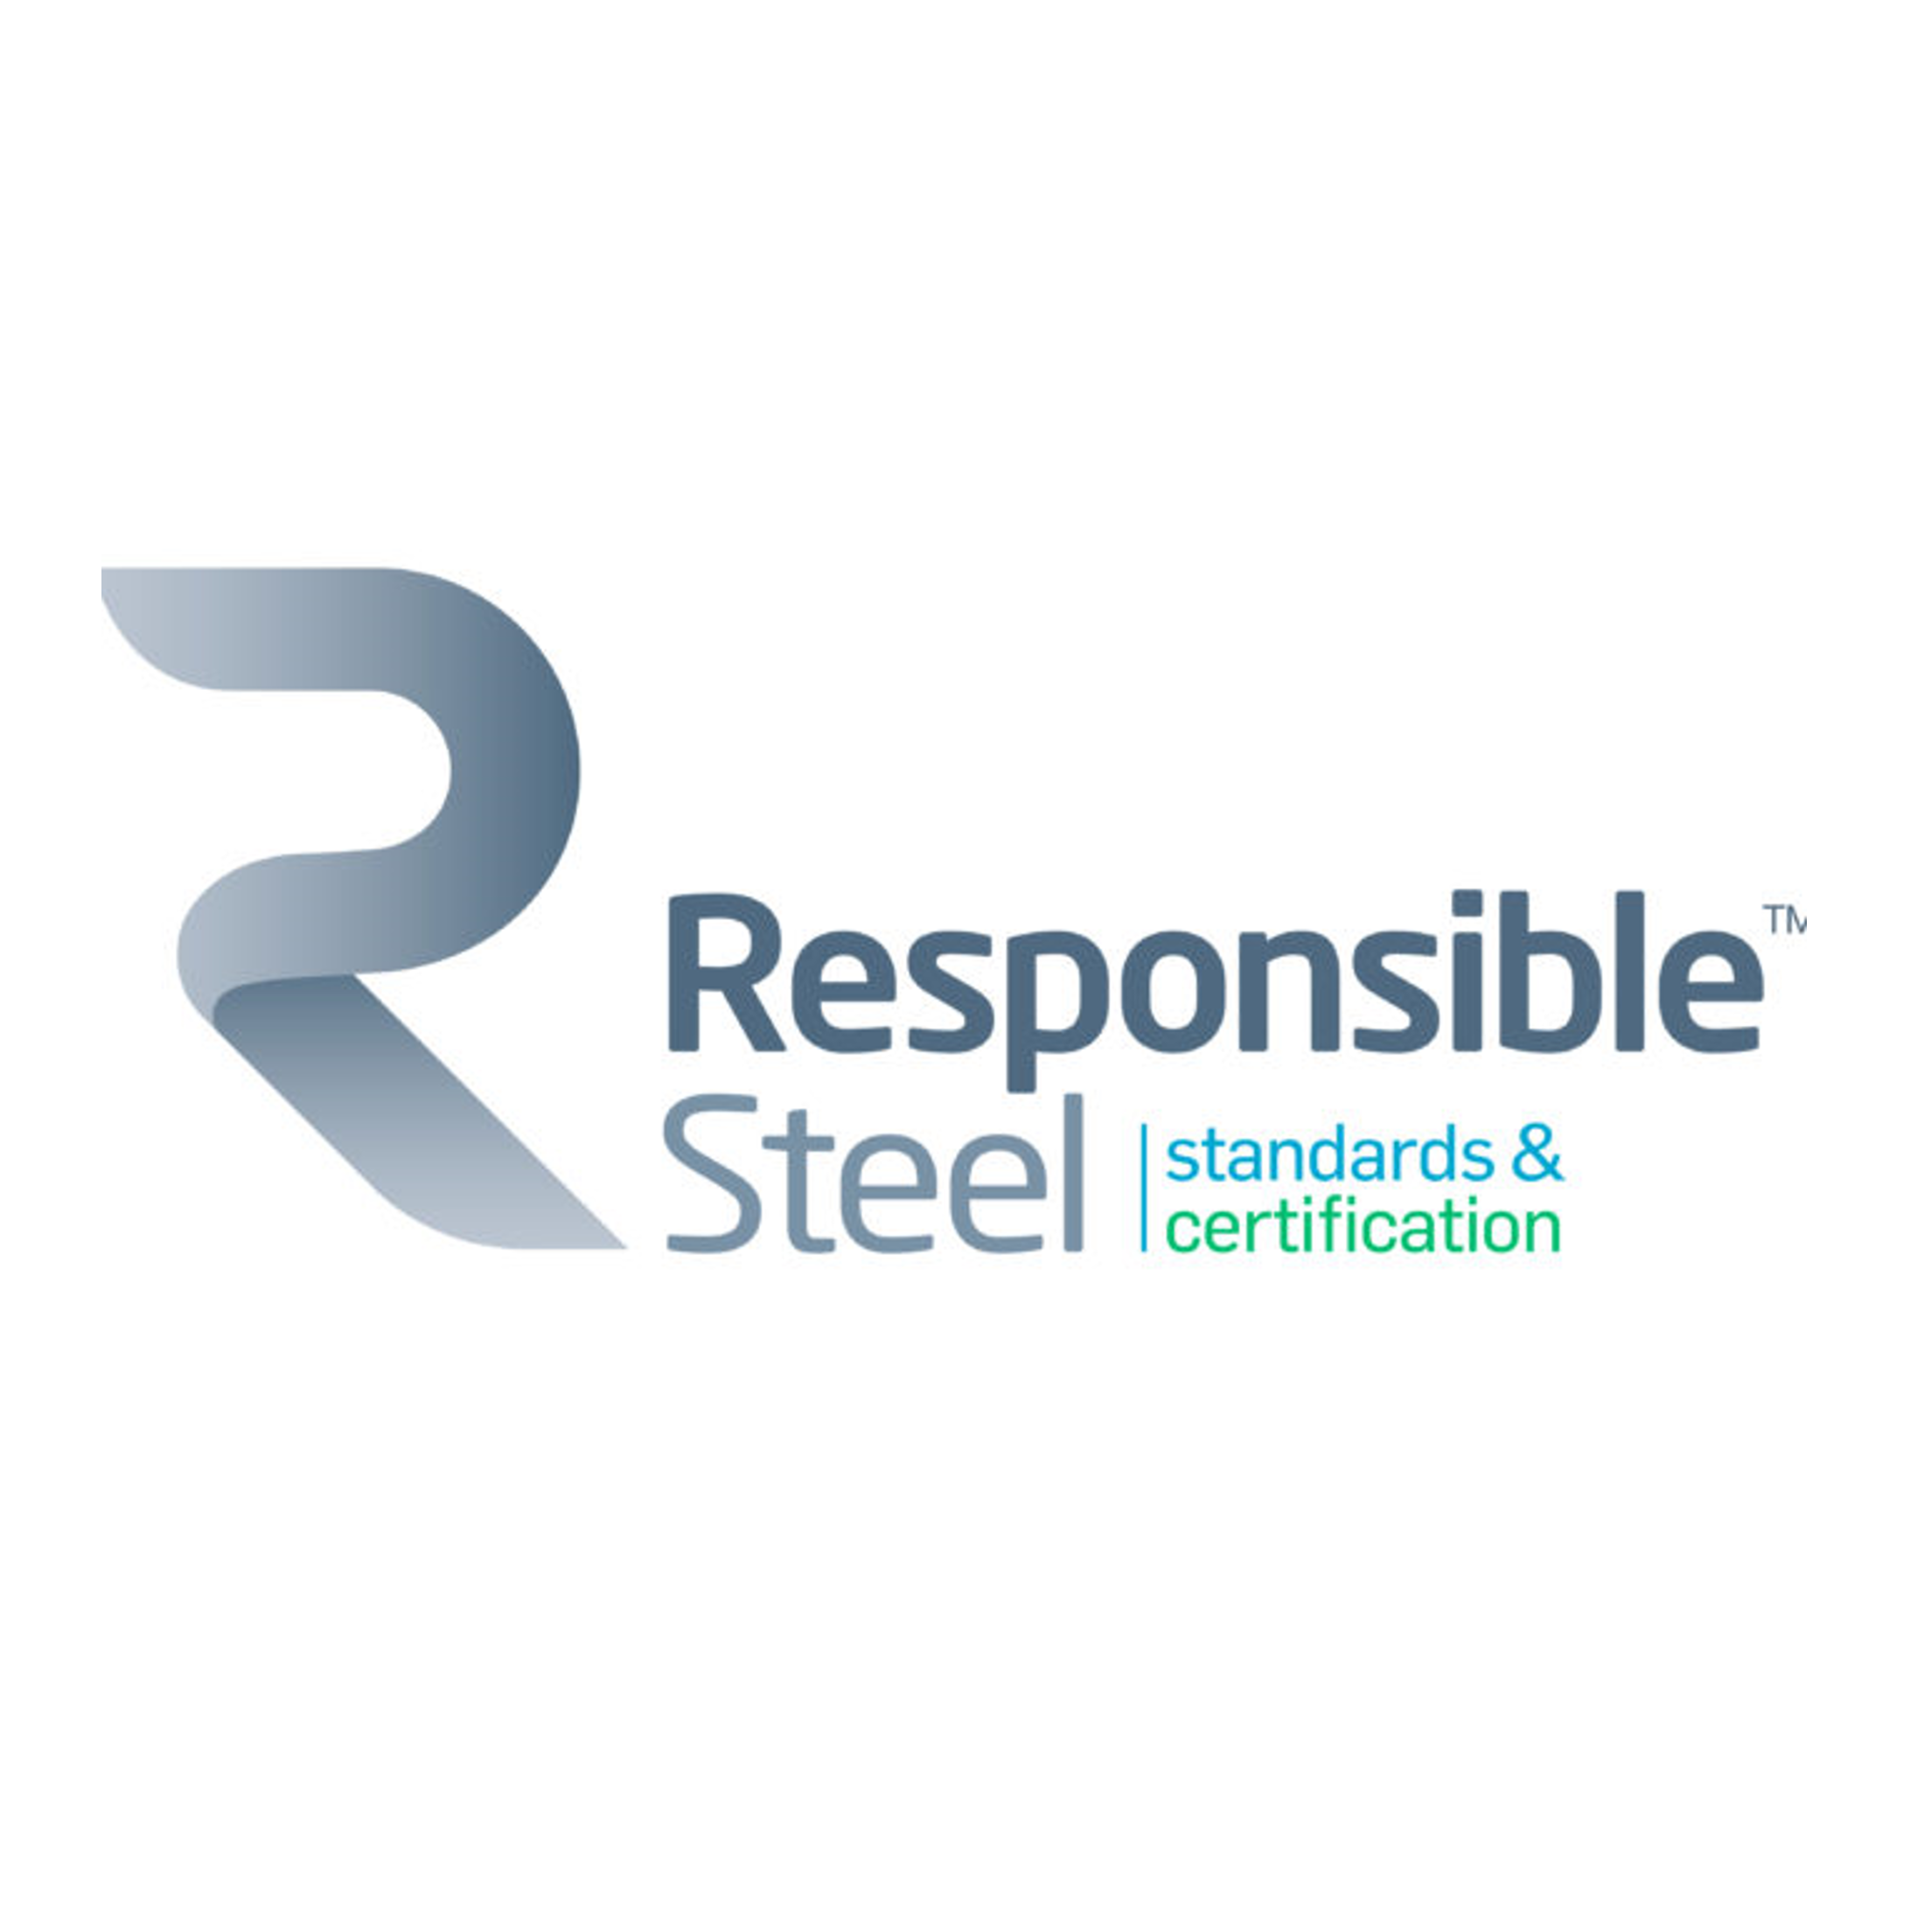 ResponsibleSteel logo